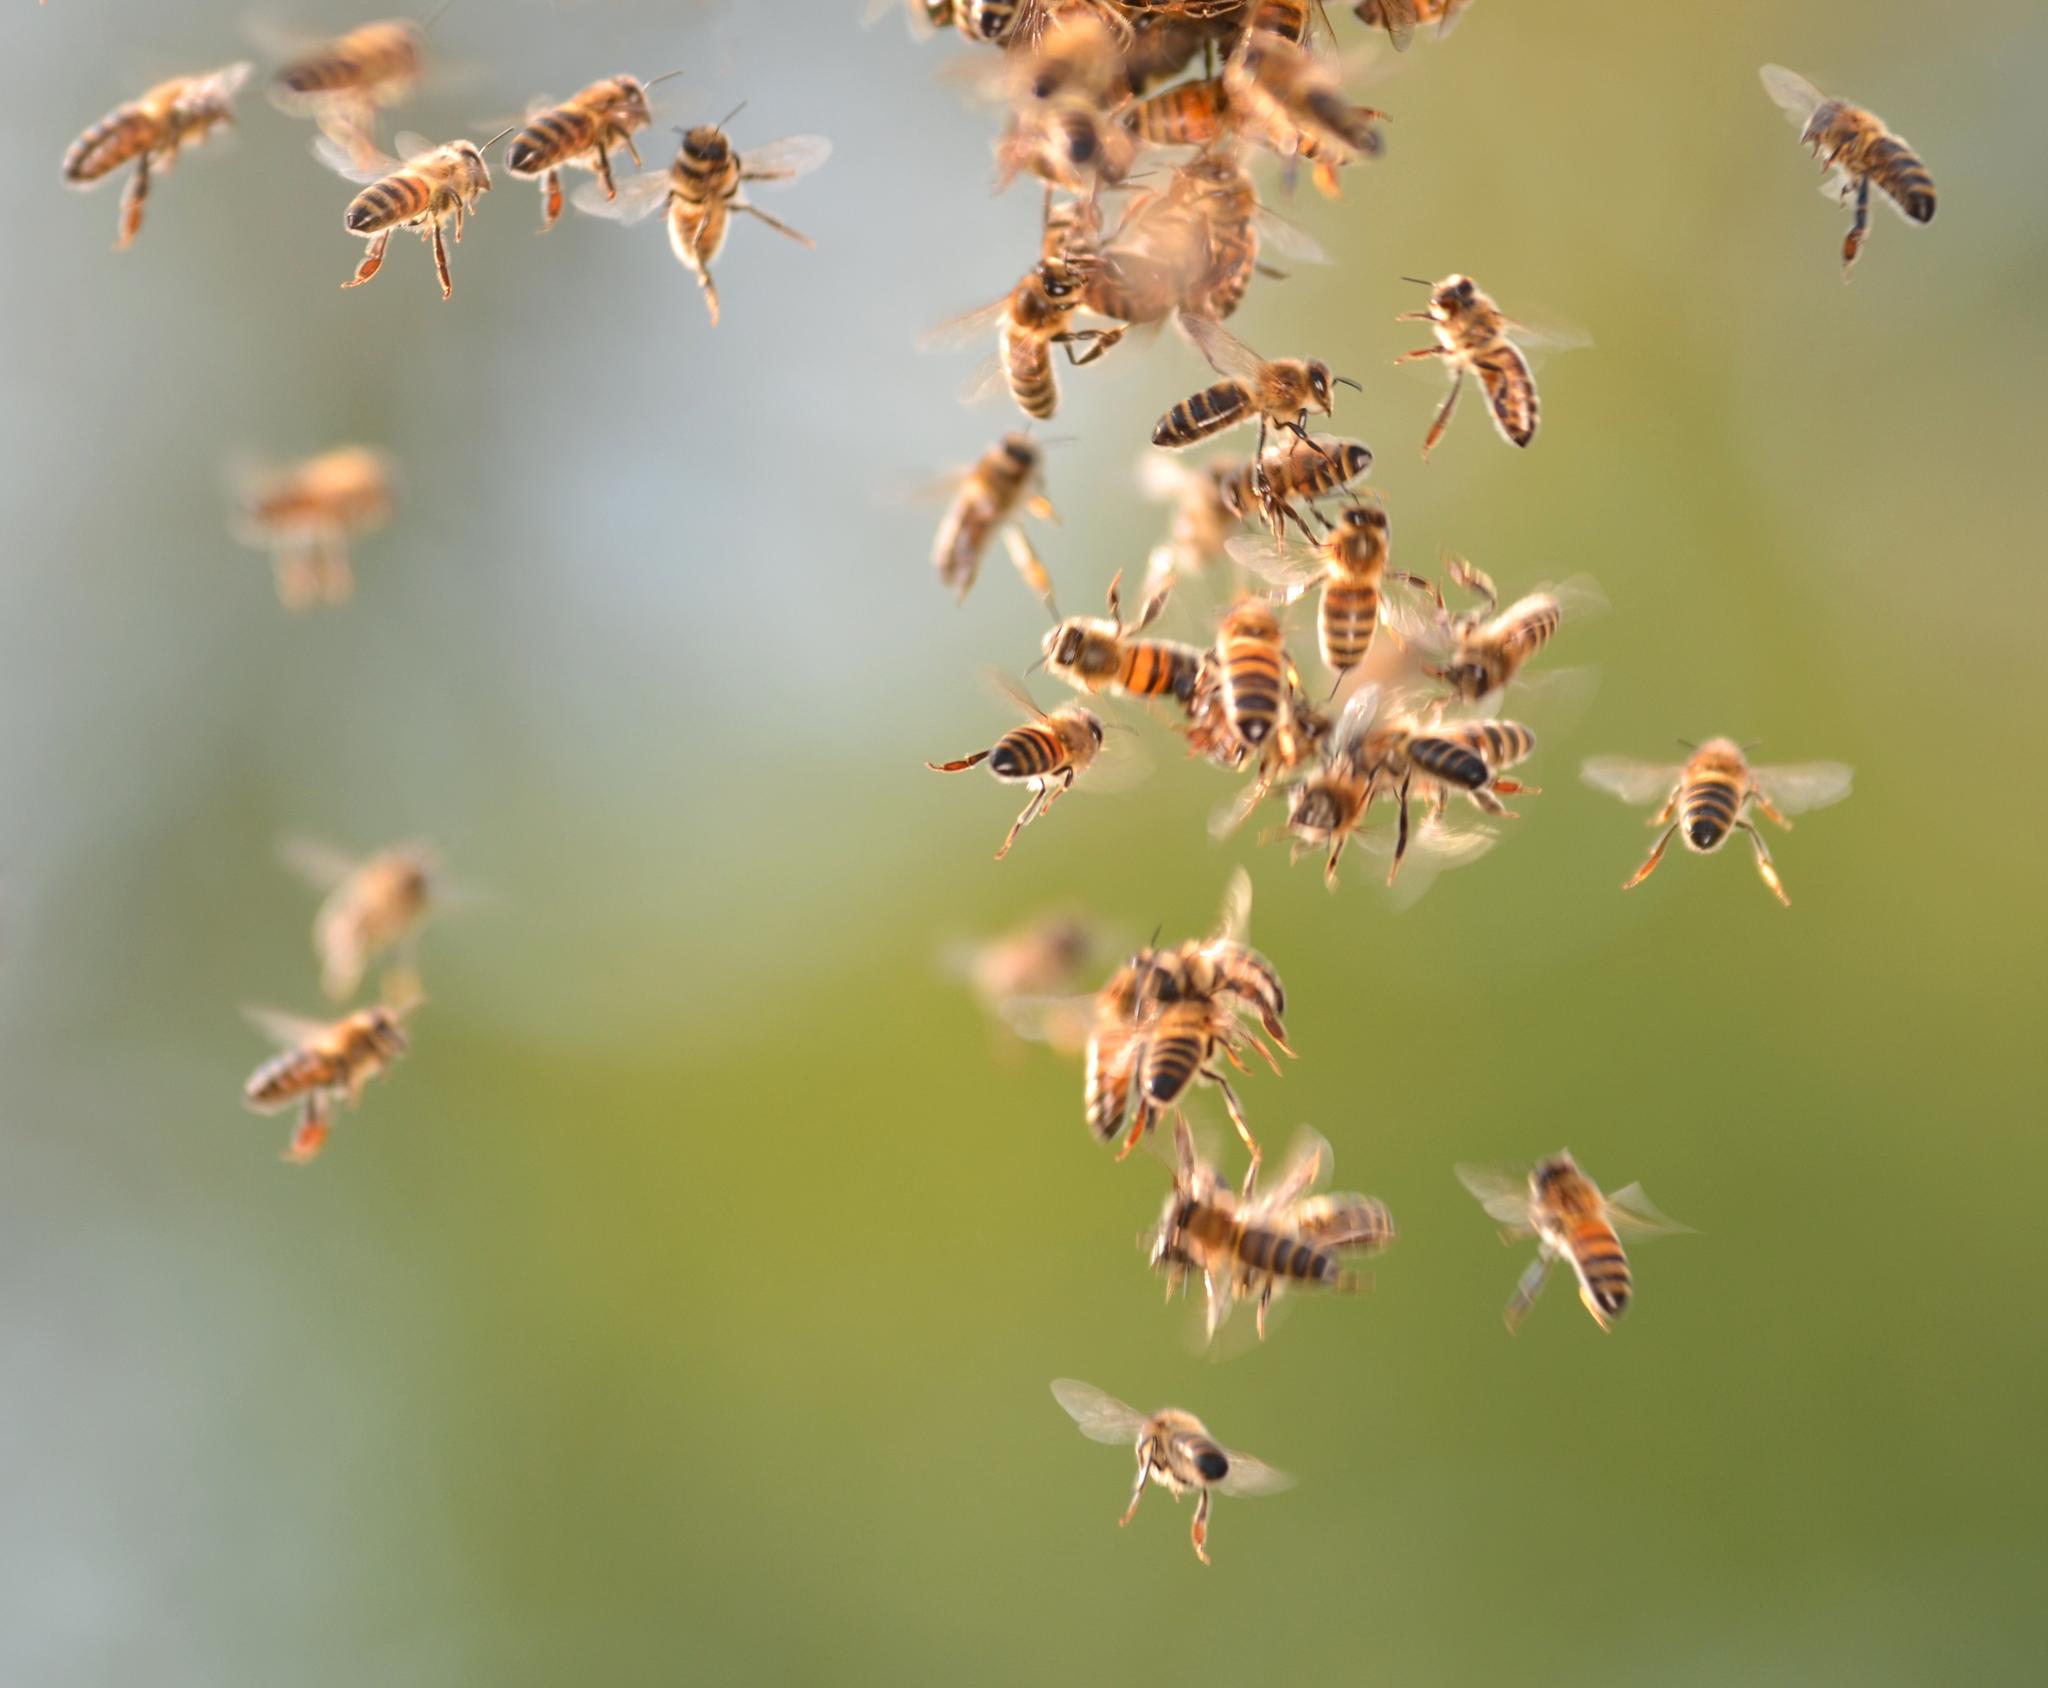  Honningbiene, våre seksbeinte flyvende husdyr som gir oss honning og bidrar til bestøvning, teller noe slikt som 83 milliarder individer. Også her er det damer som styrer skuta, og damer som gjør all jobben.  